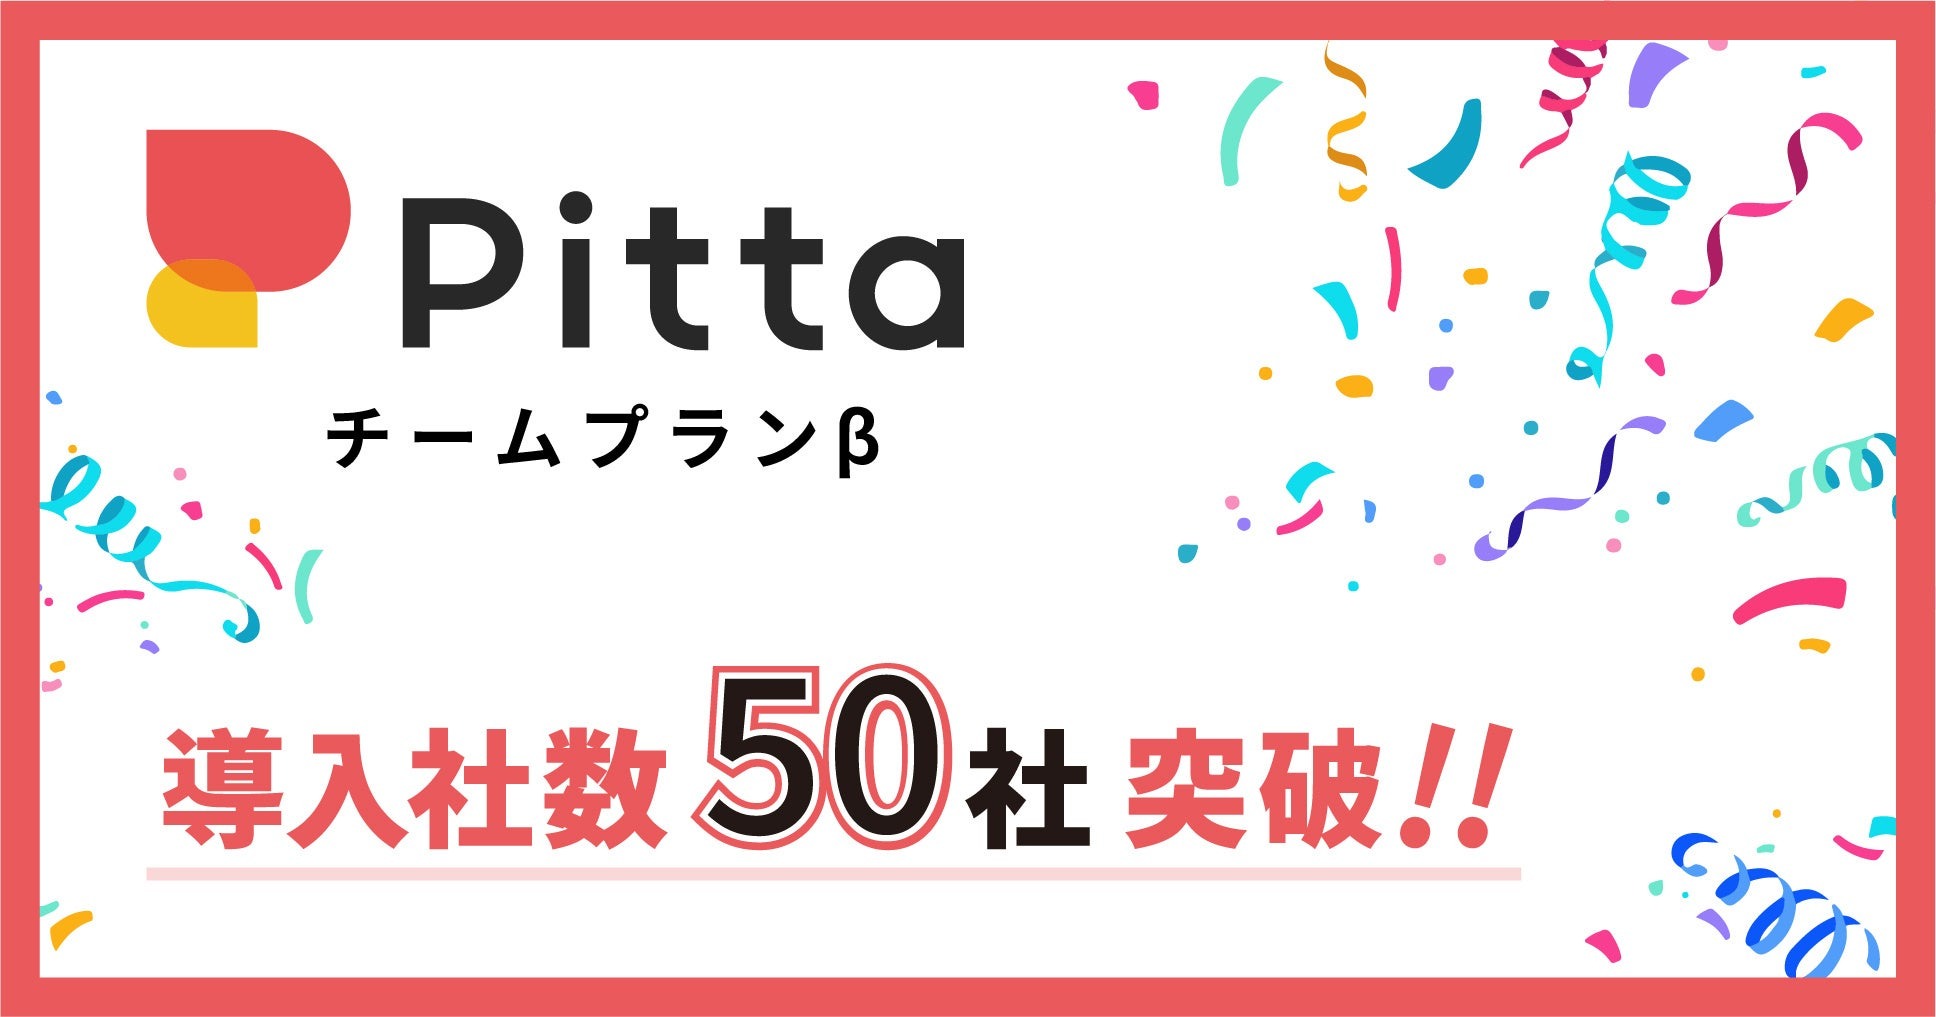 カジュアル面談「Pitta」の「チームプランβ」、導入社数が50社突破